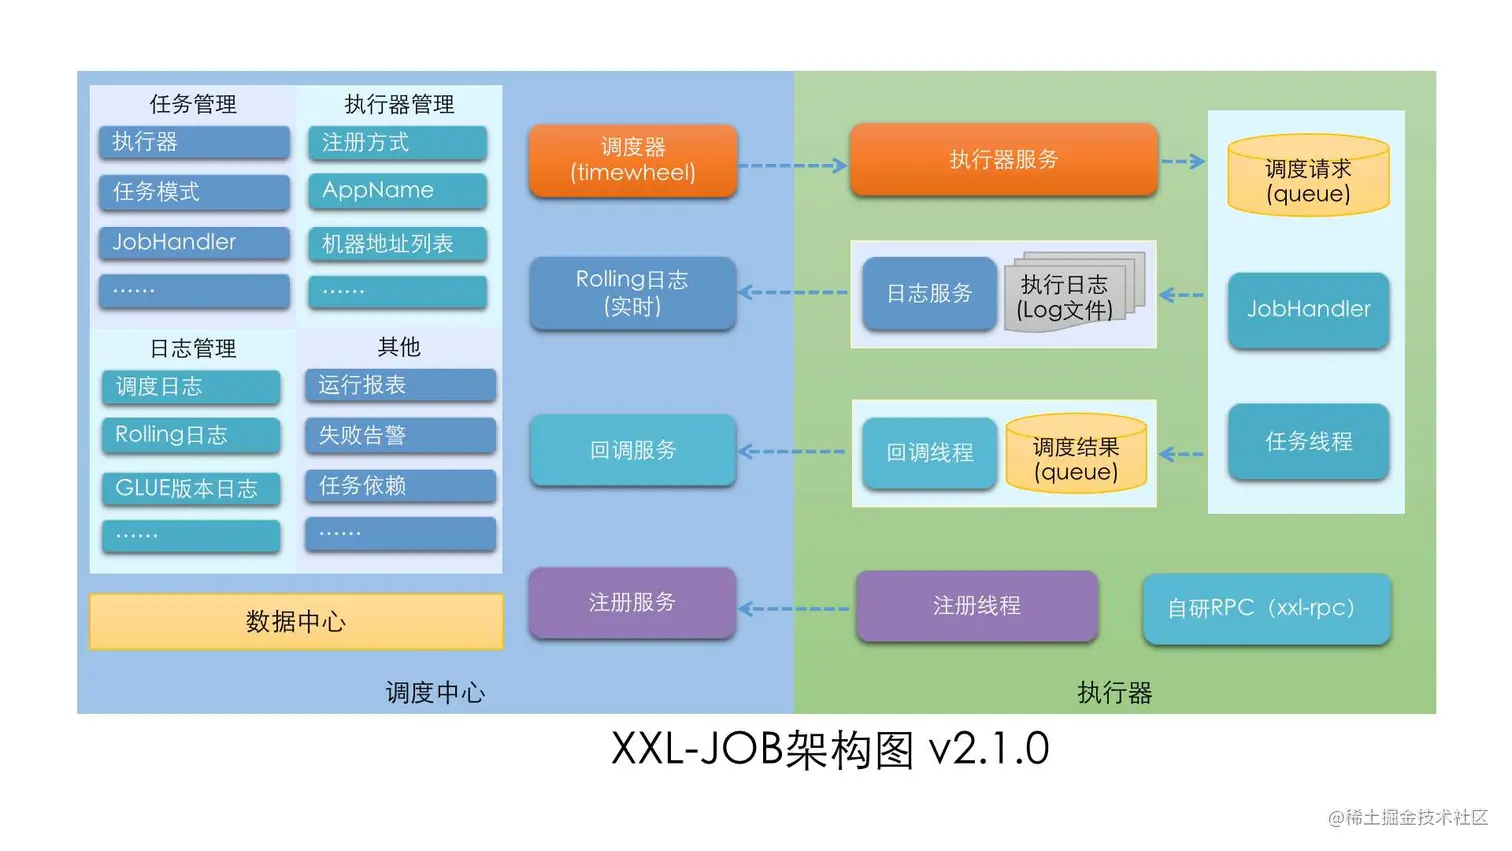 XXL-JOB架构图.jpg